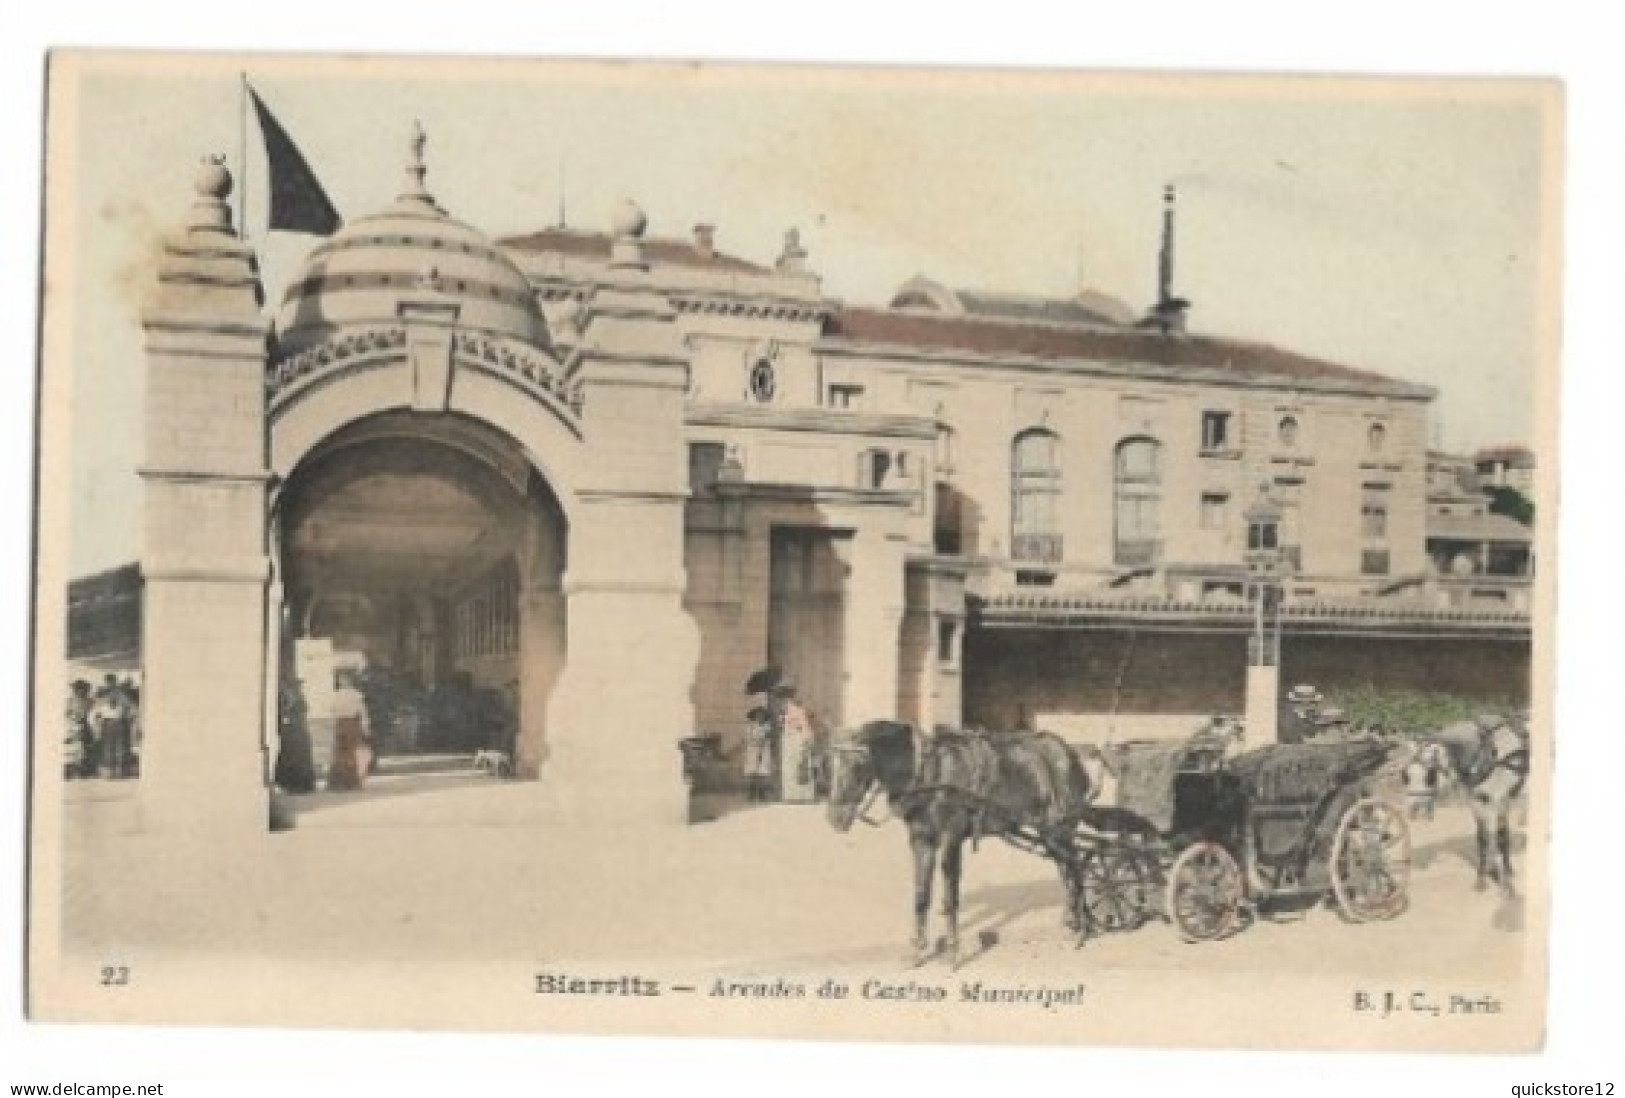 Biarritz - Arcades Du Casino Municipal  - 7449 - Sonstige Sehenswürdigkeiten